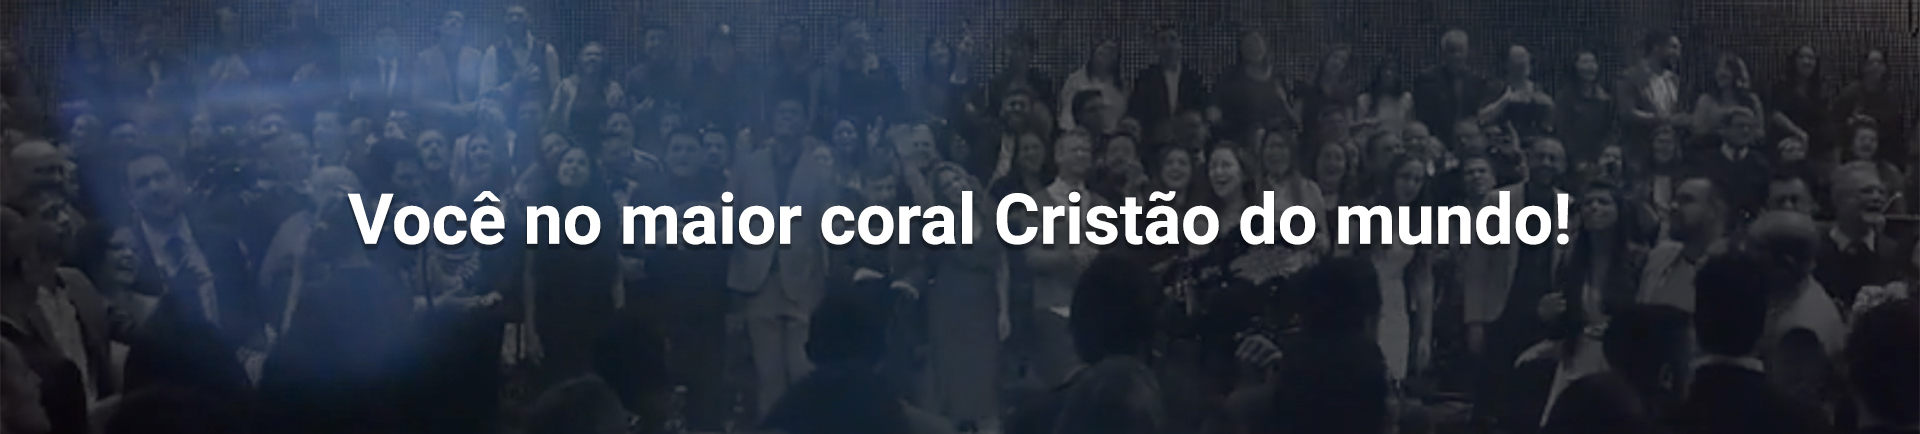 Você no maior coral cristão do mundo!